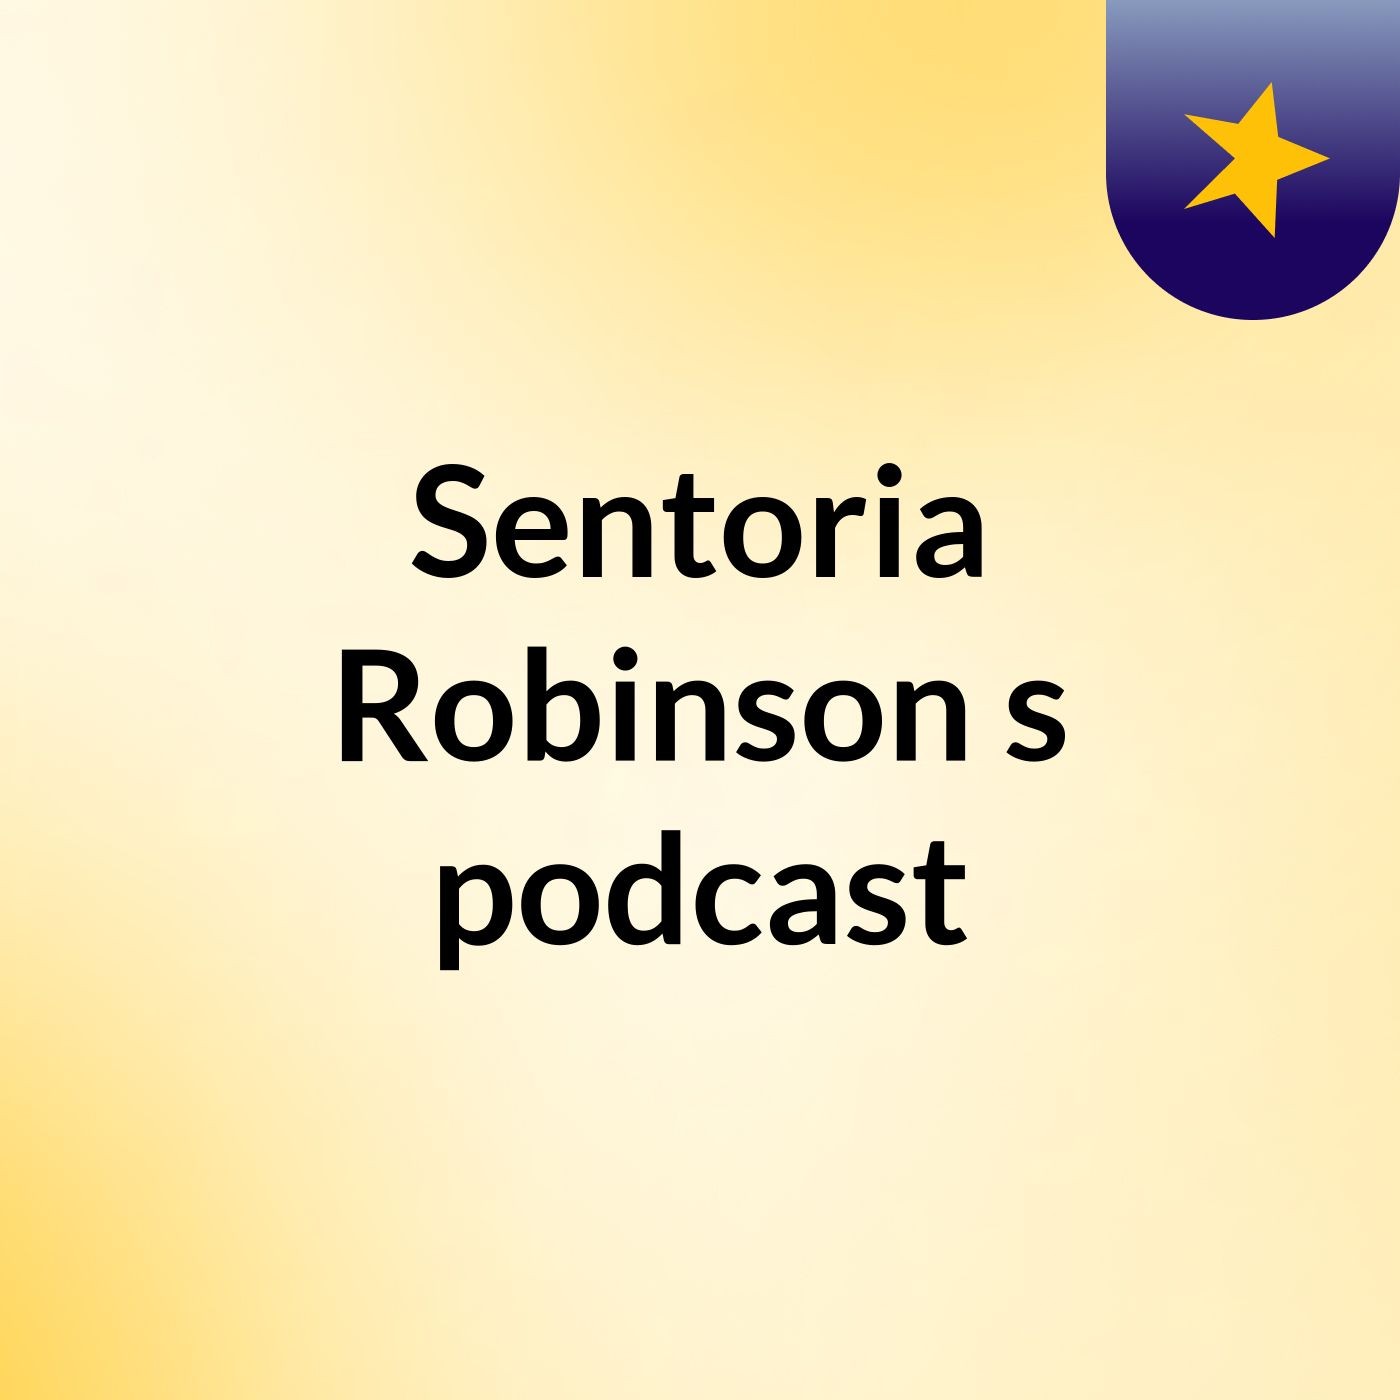 Sentoria Robinson's podcast